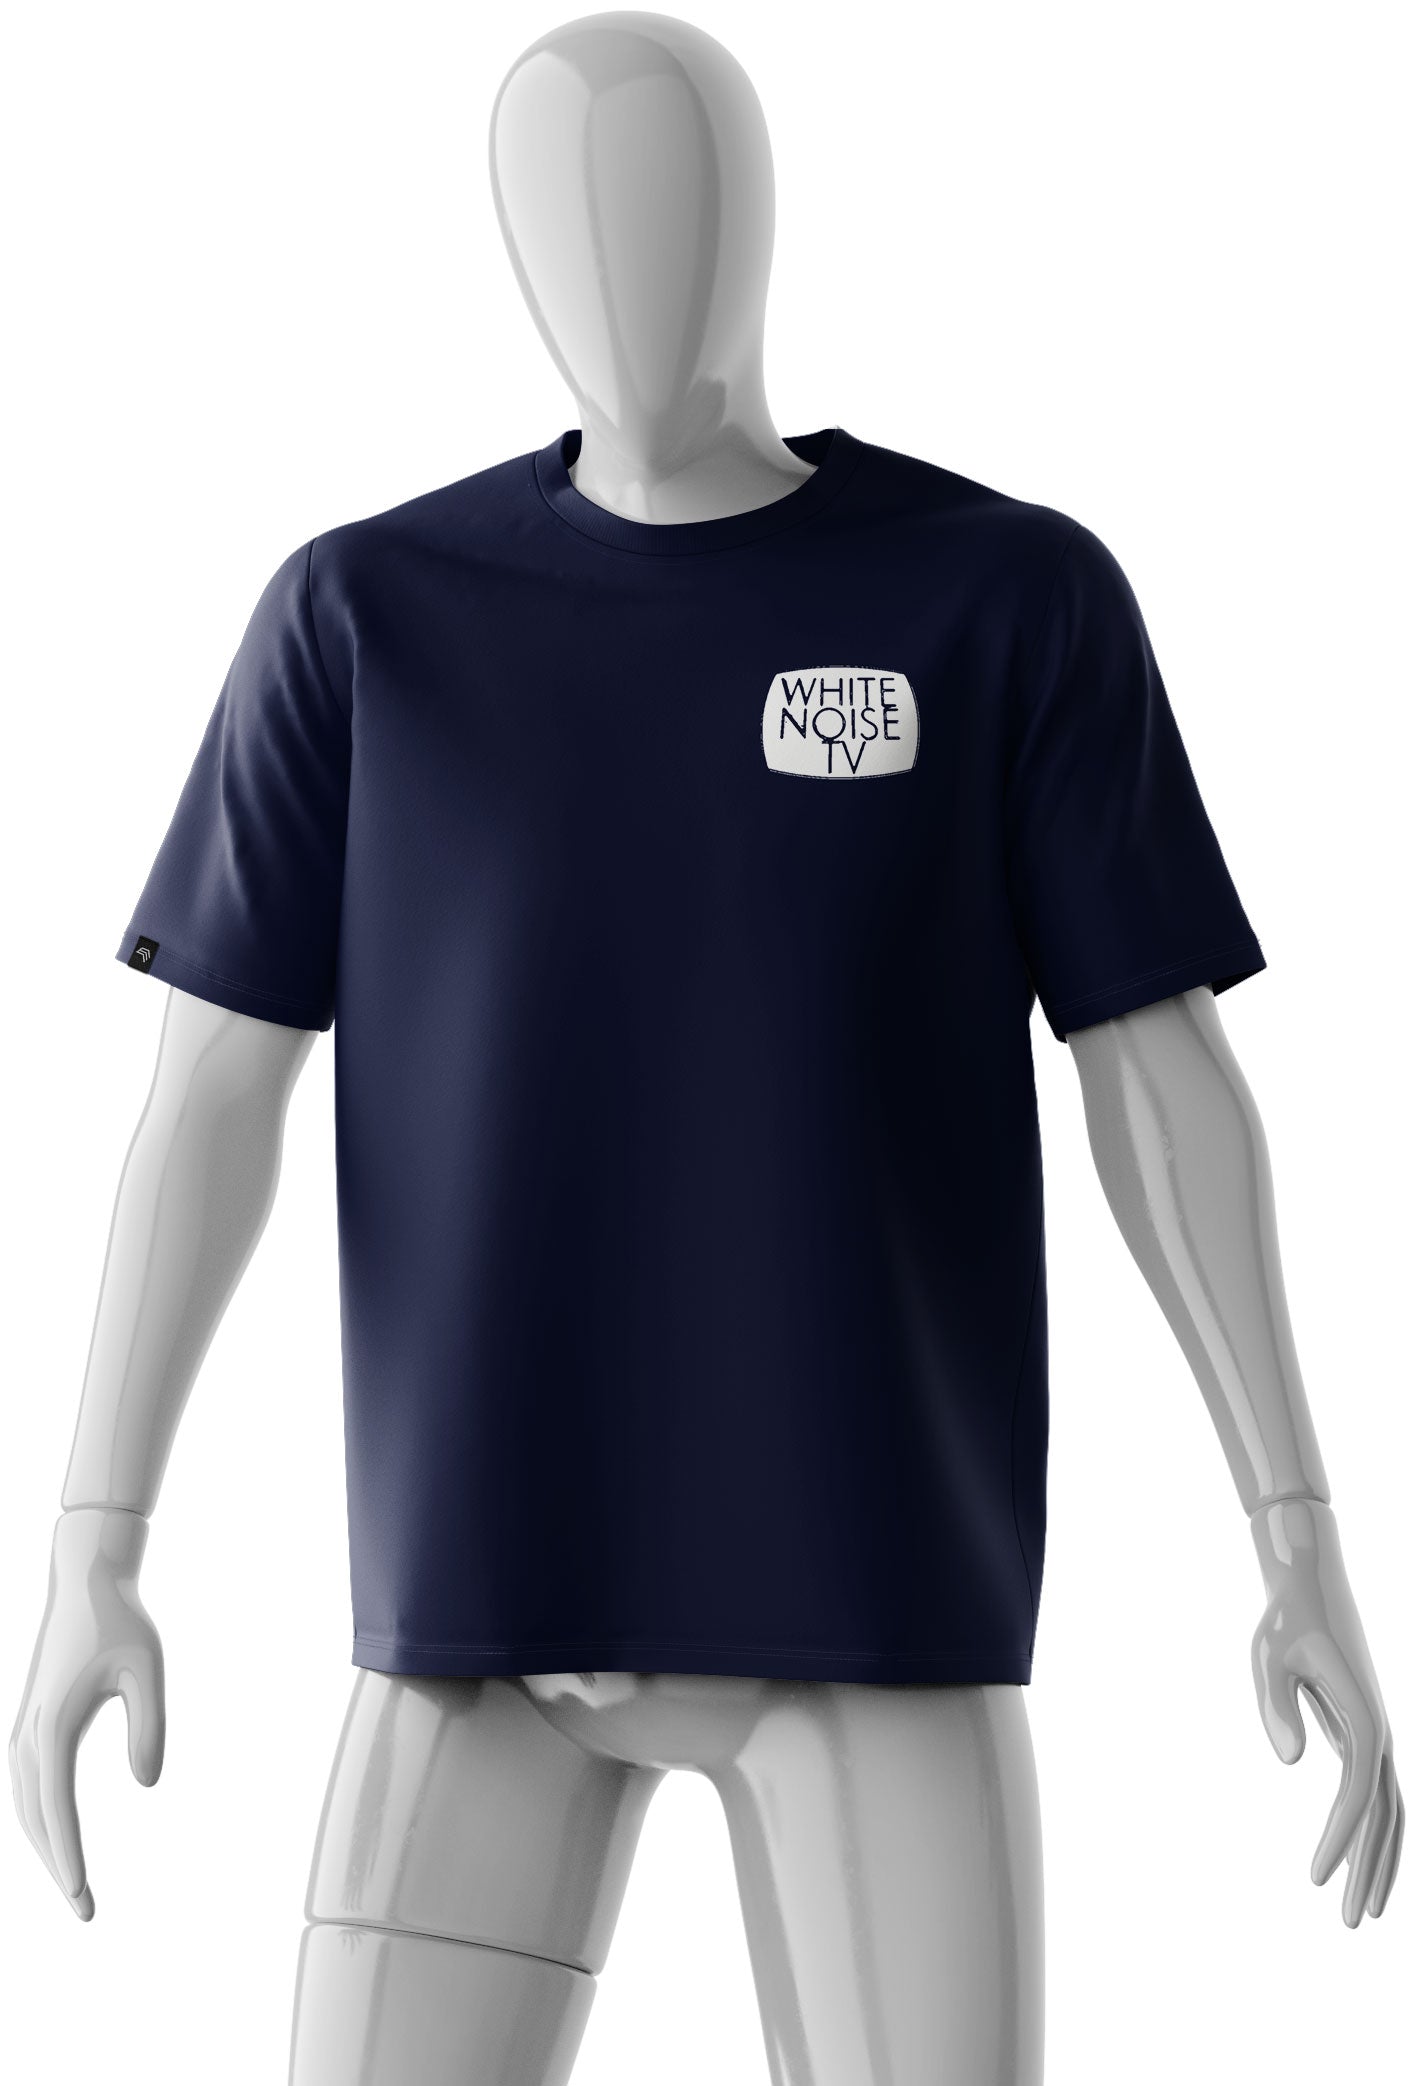 White Noise TV - Logo (Breast) - Men's Basic T-Shirt